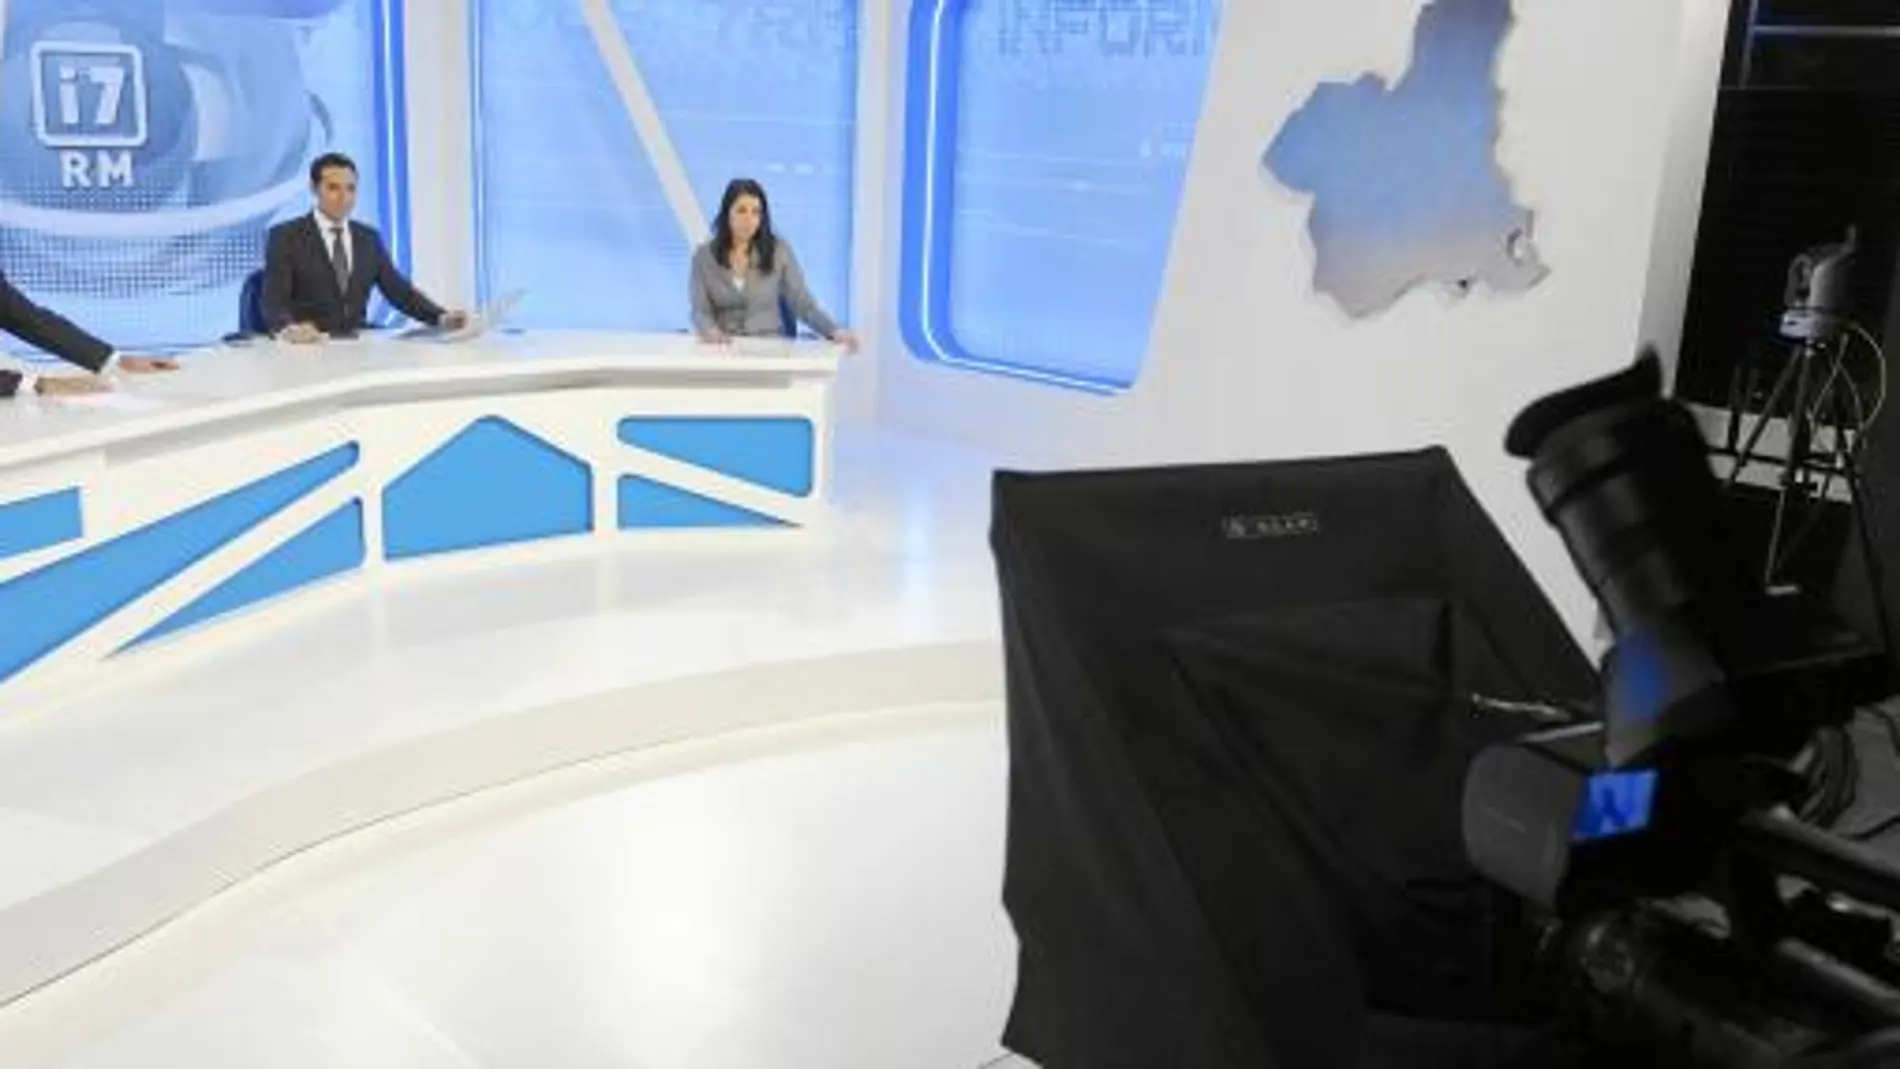 Juan Cervantes, Nacho Gómez y Marta Morenilla serán los encargados de conducir el nuevo telediario